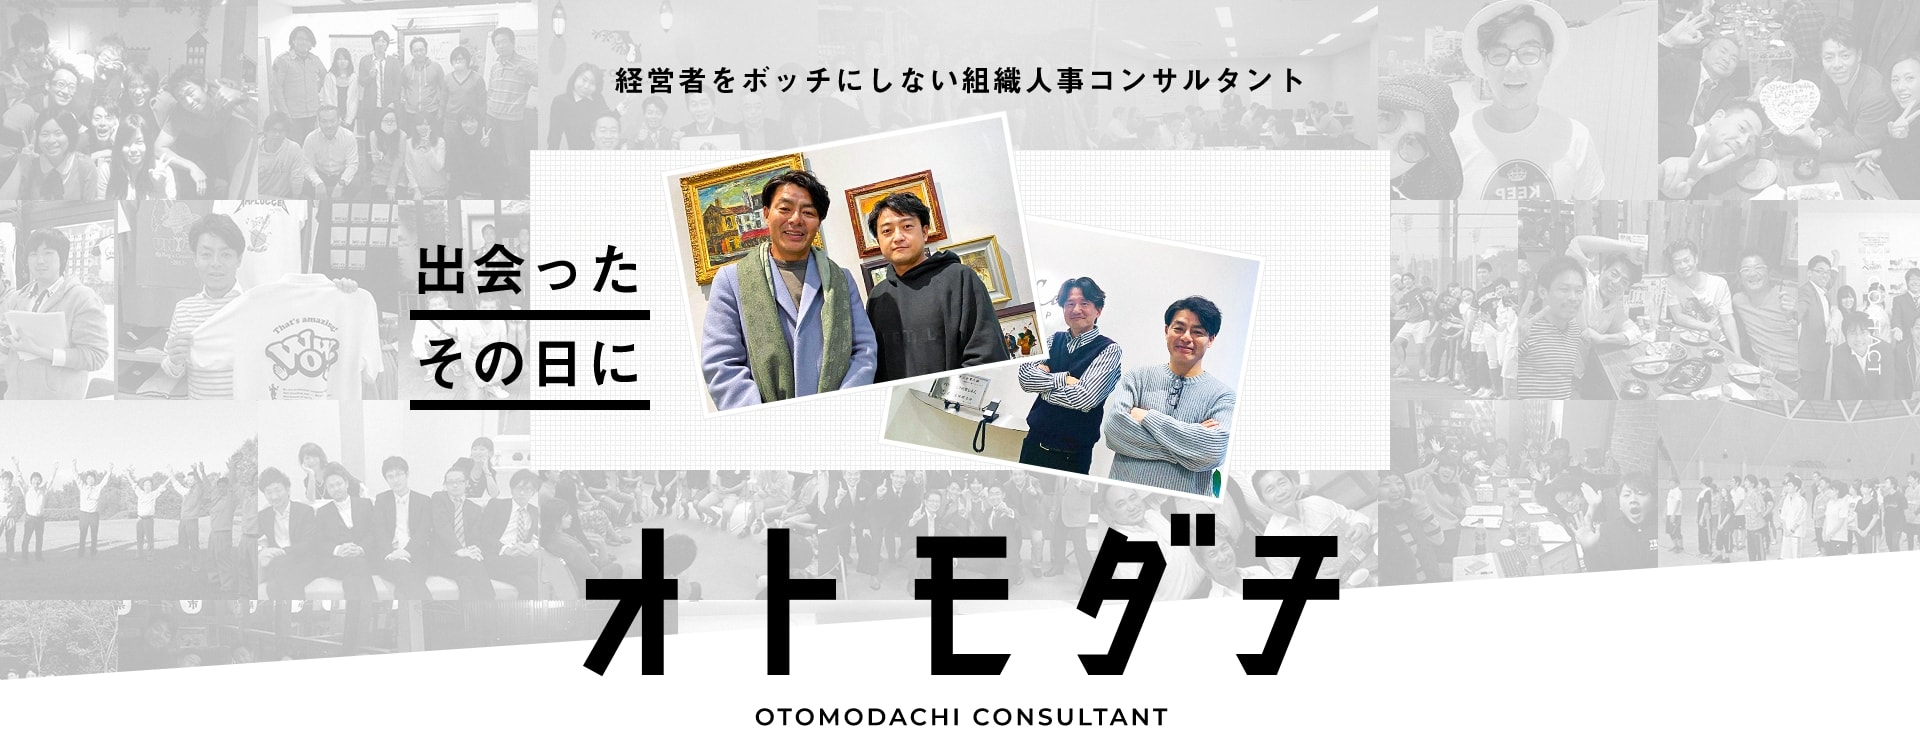 OTOMODACHI CONSULTANT 経営者をボッチにしない組織人事コンサルタント 出会ったその日に オトモダチ